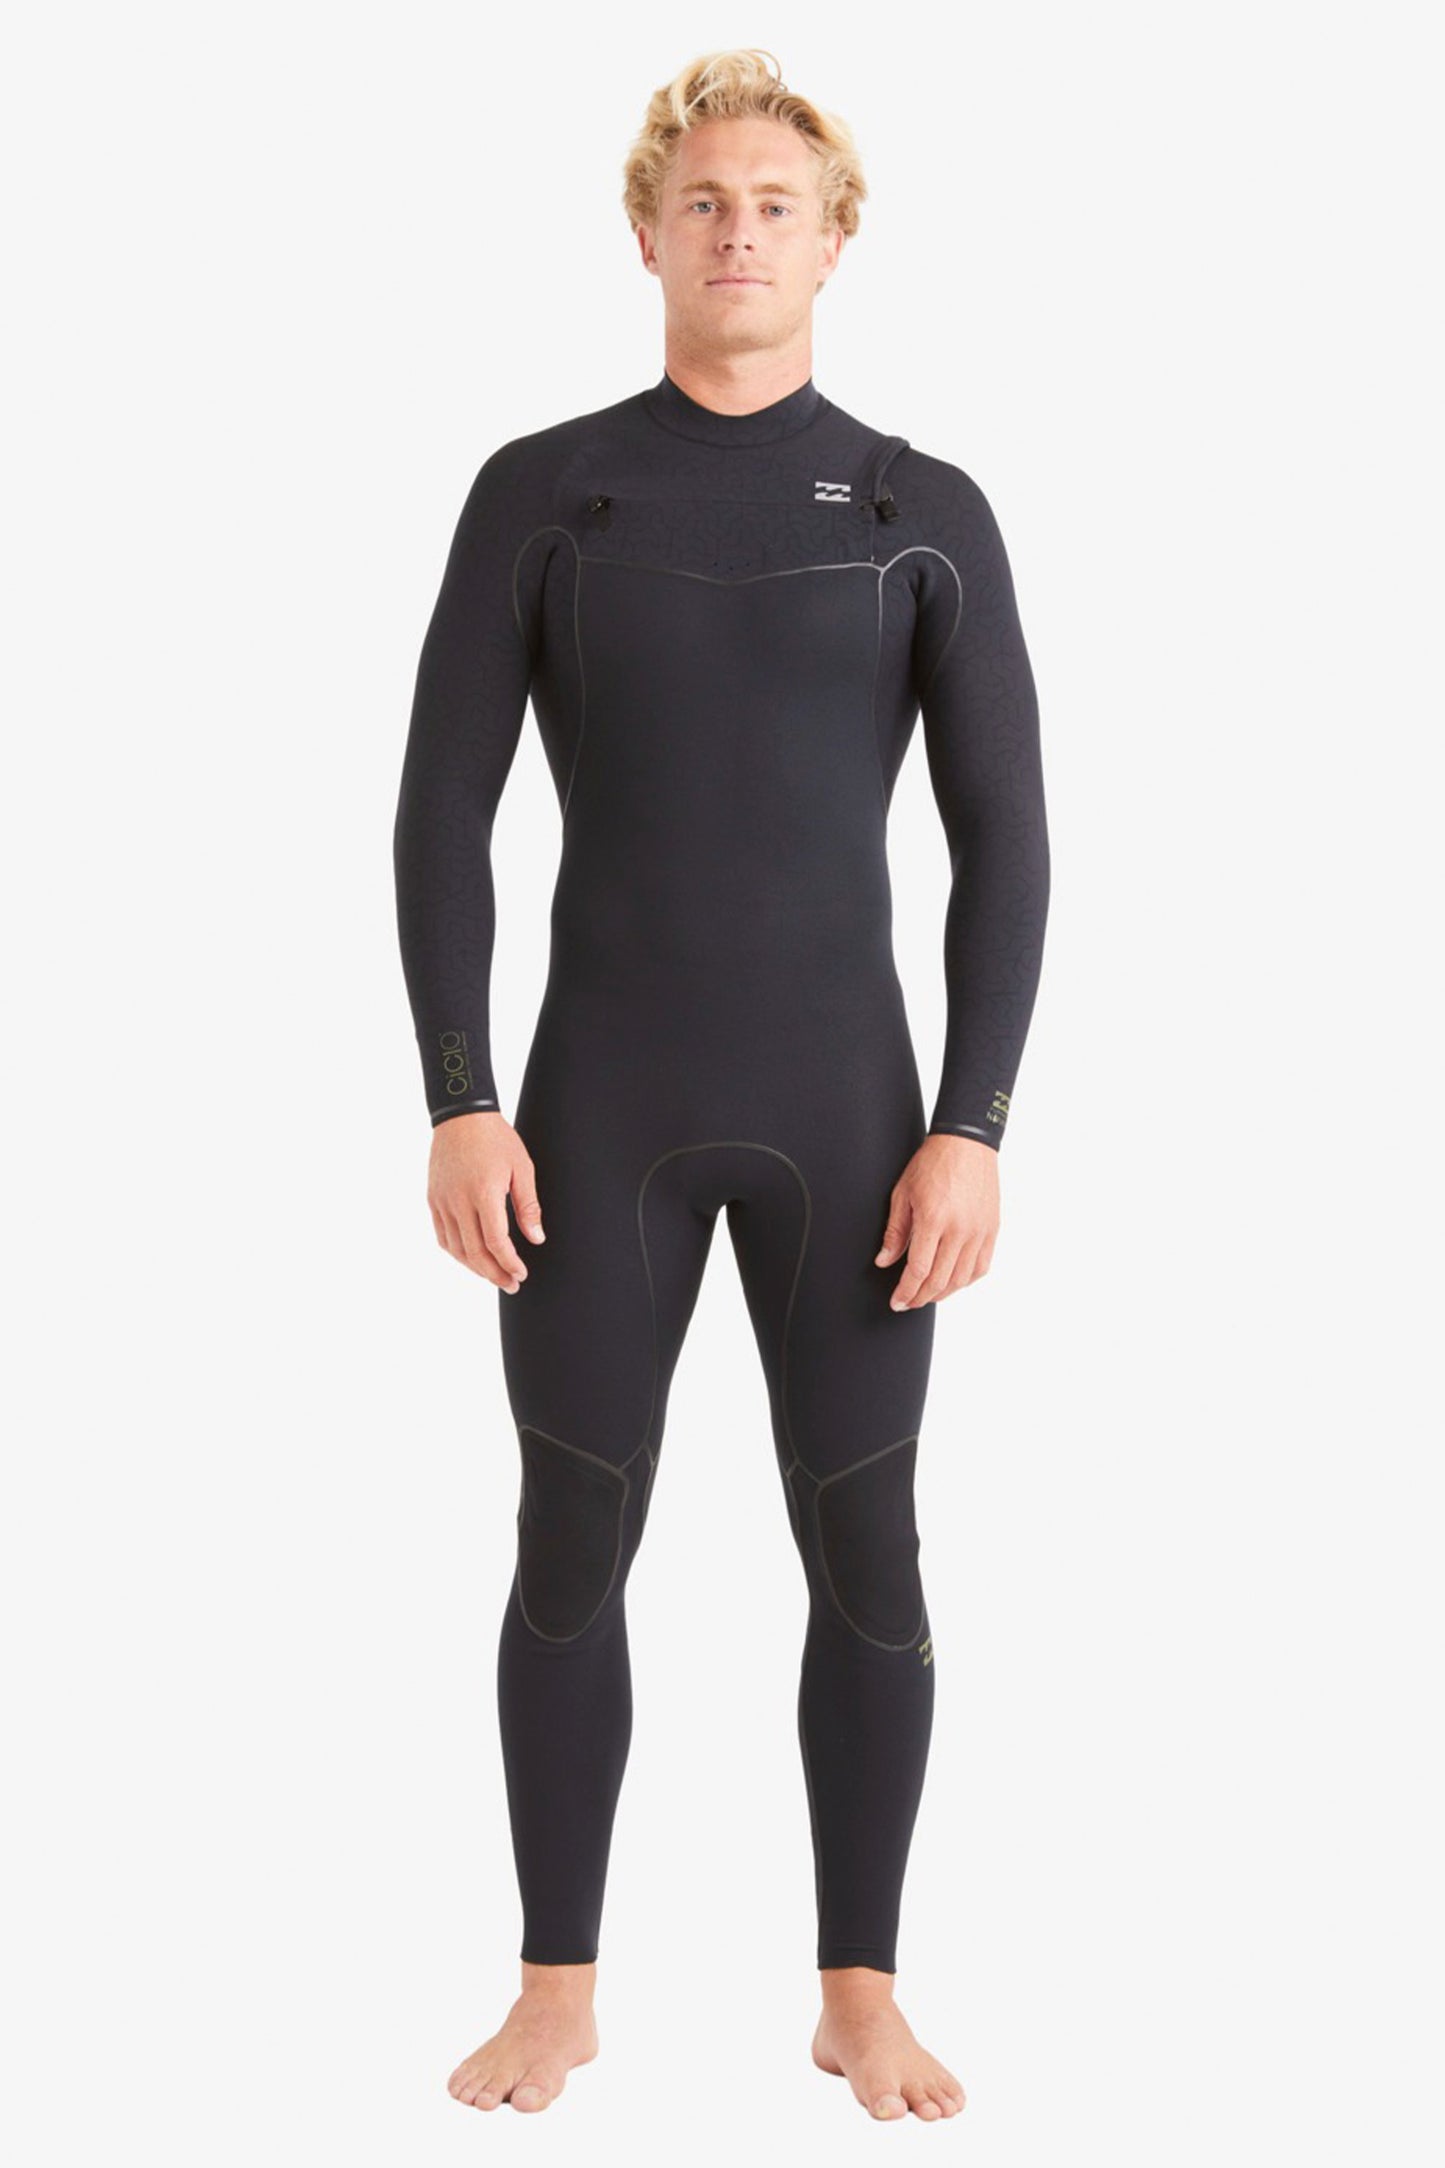    Pukas-Surf-Shop-Billabong-Wetsuit-billabong-furnace-natural-4-3mm-chest-zip